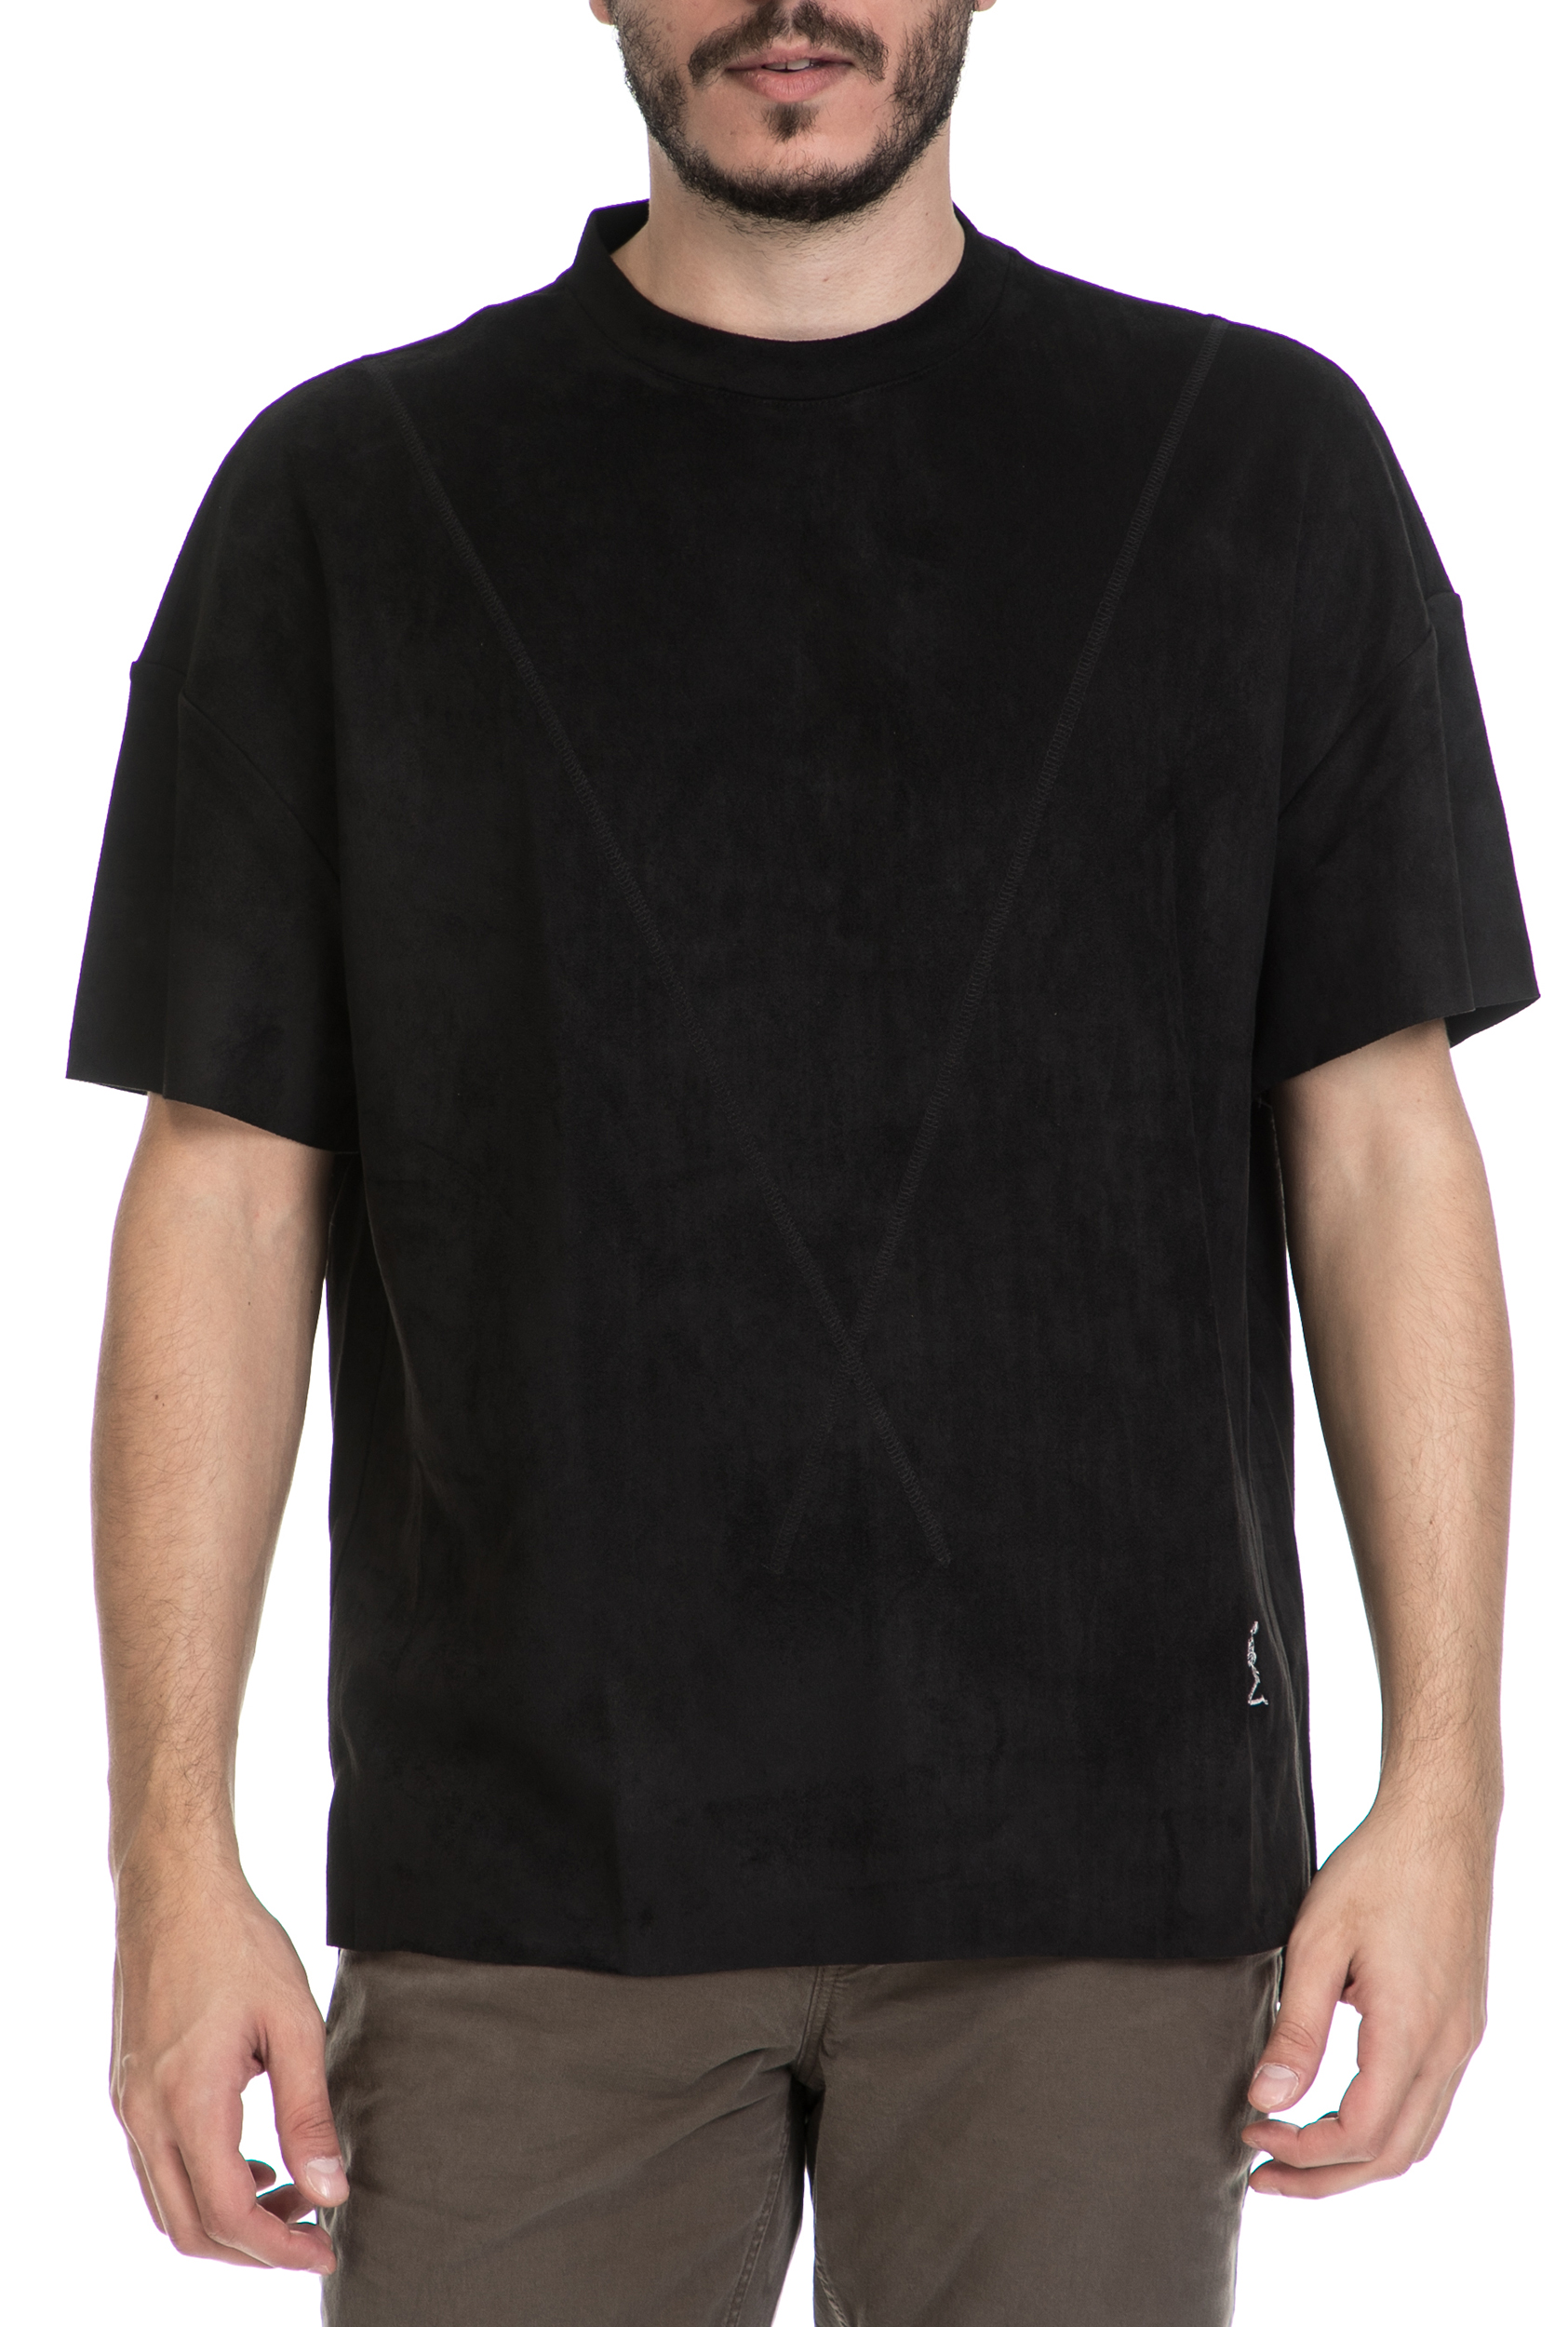 Ανδρικά/Ρούχα/Μπλούζες/Κοντομάνικες RELIGION - Ανδρική μπλούζα CAPTIVE RELIGION μαύρη